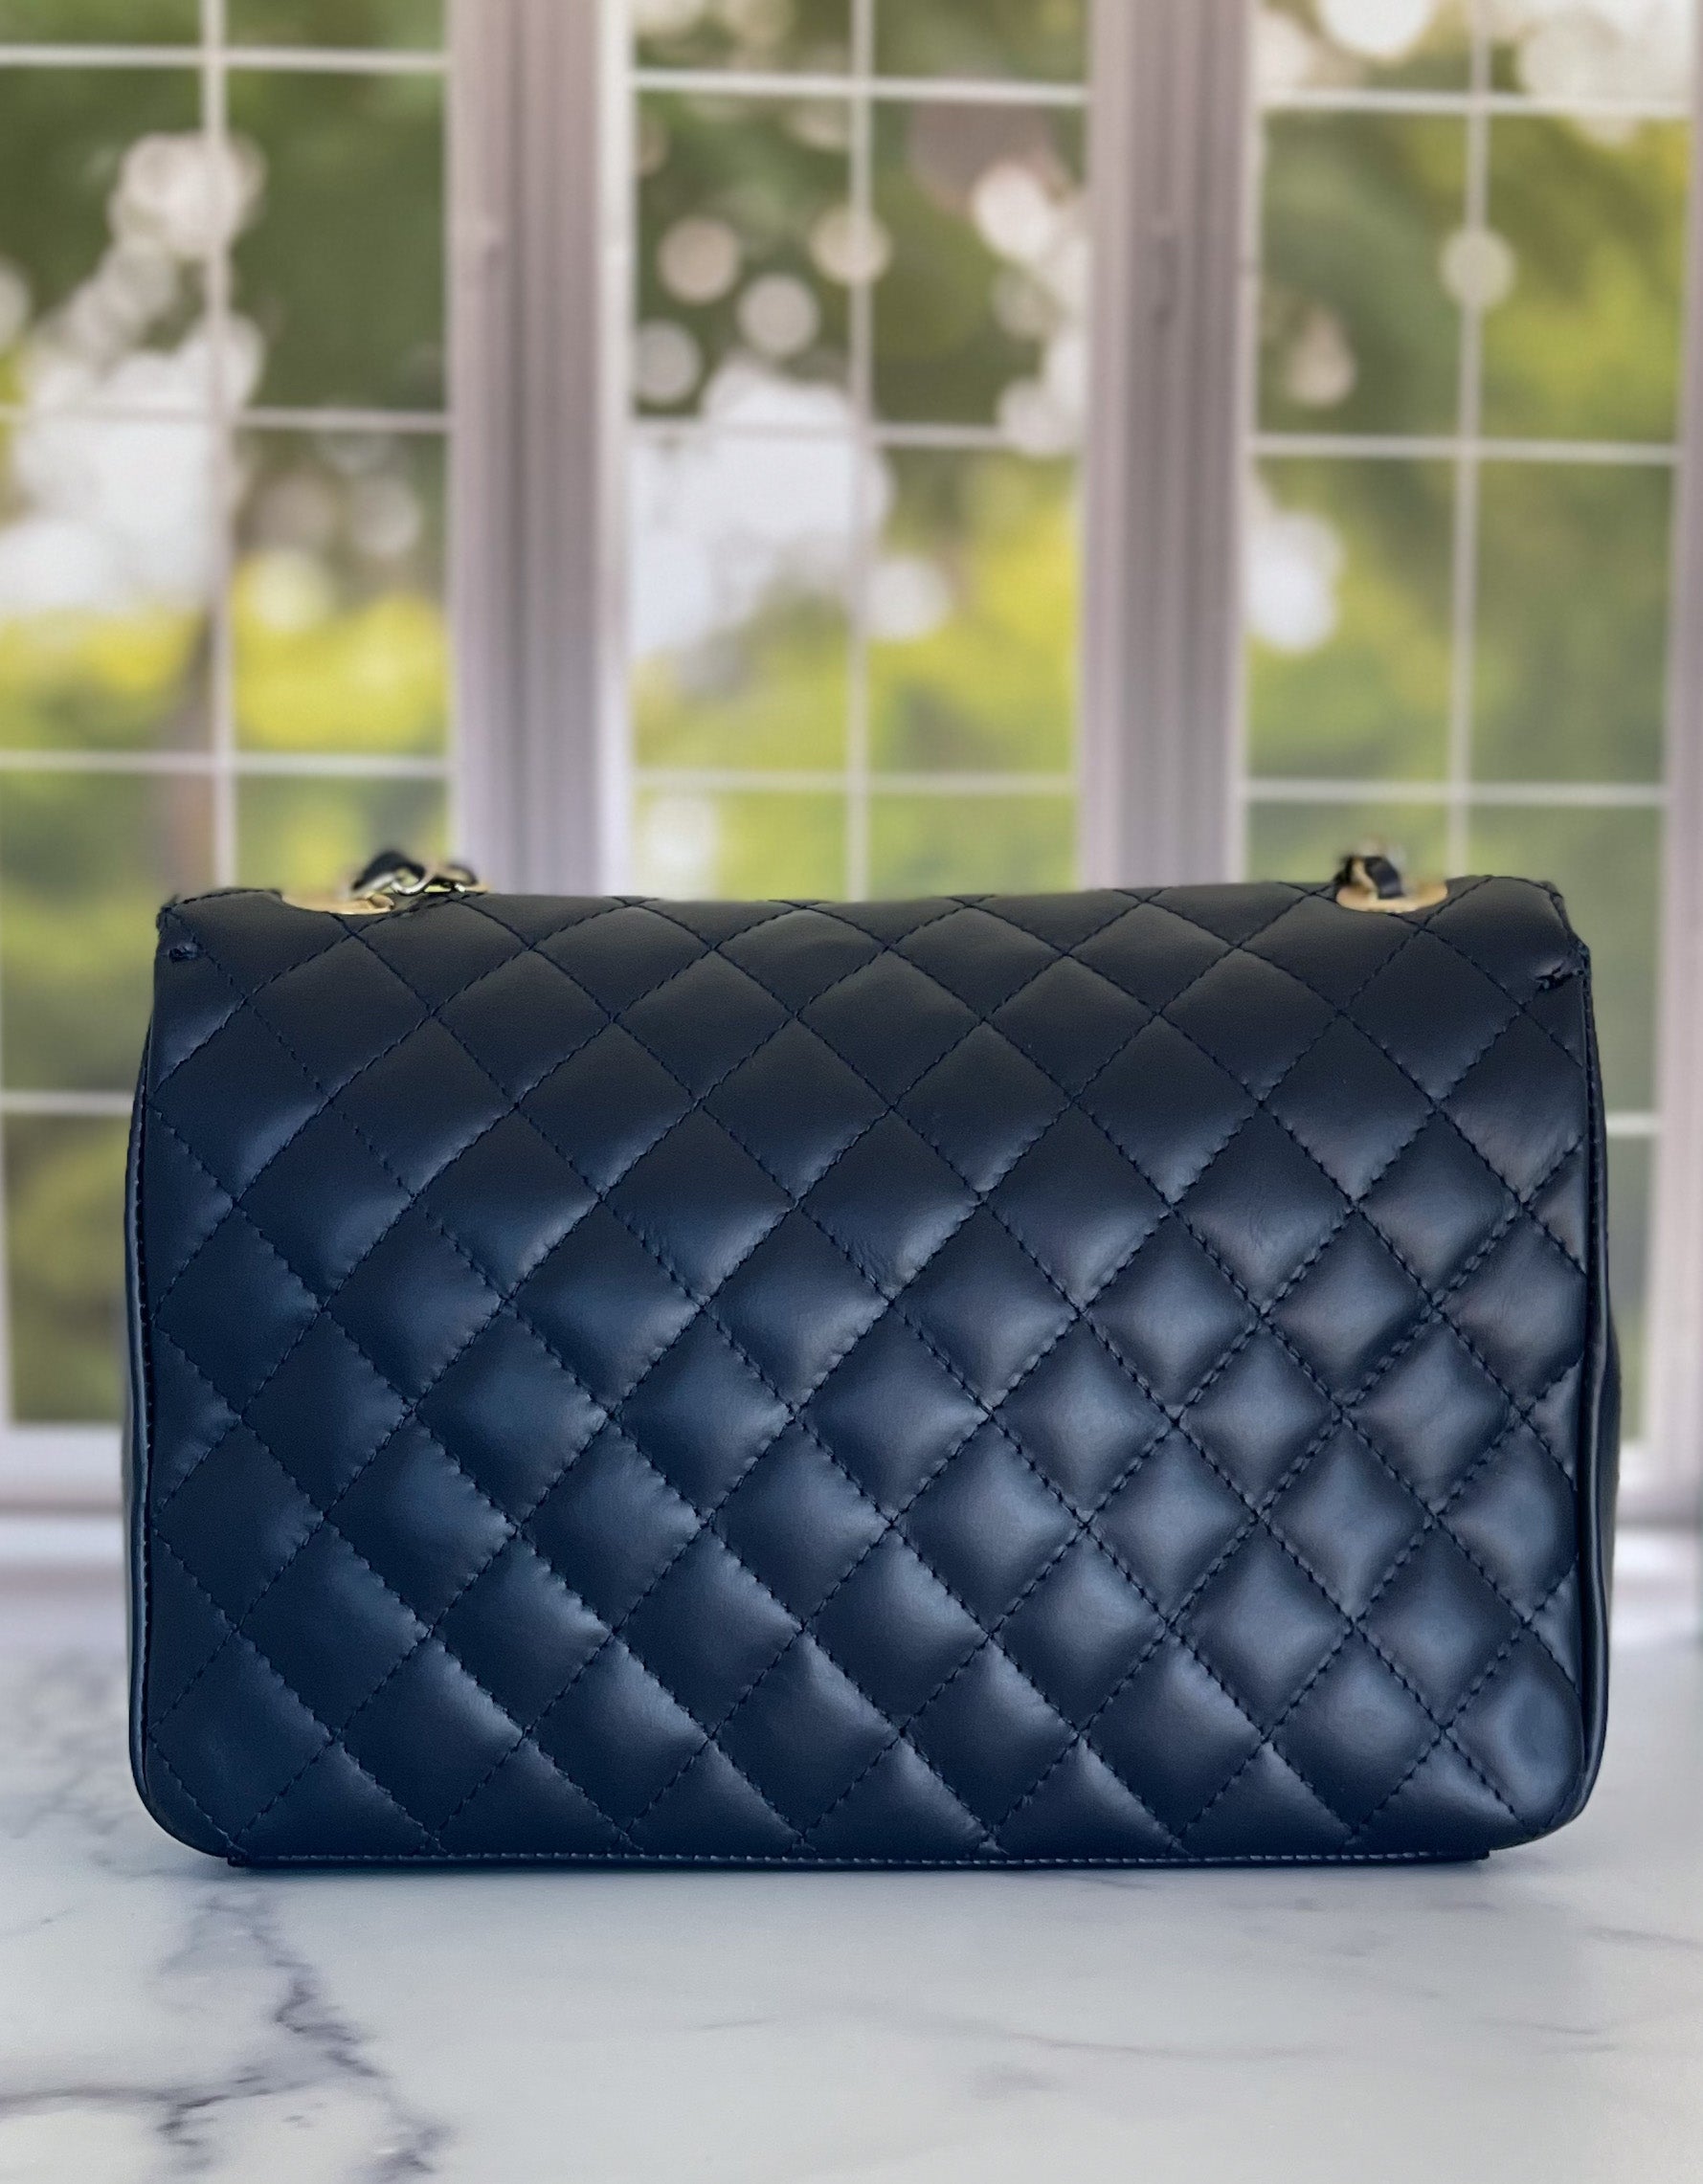 Women's Handbags :: Audrey Hepburn Quotes Classy Handbag en Large